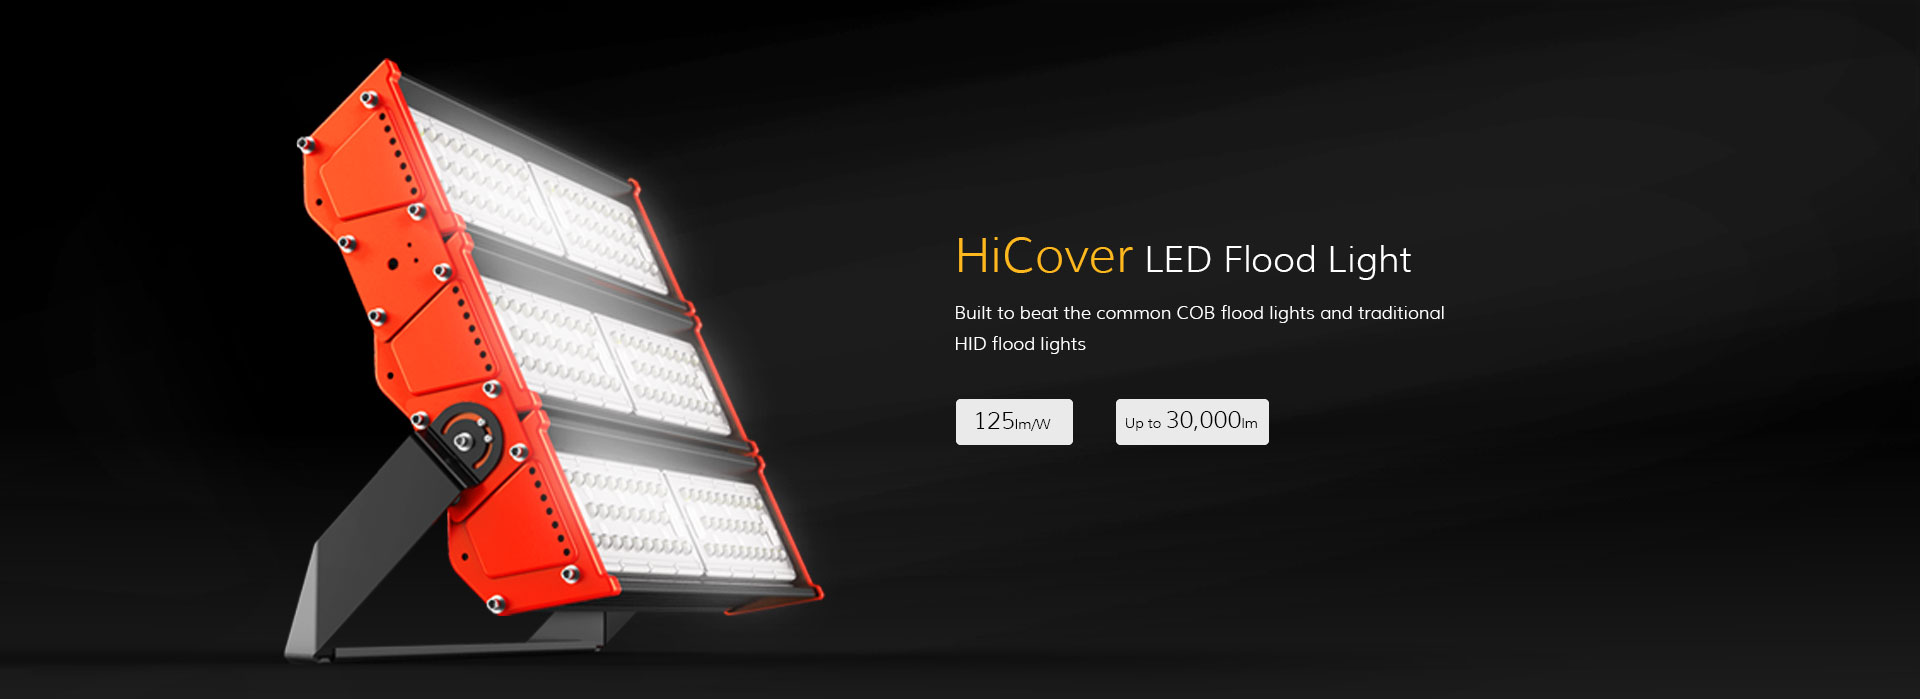 hicover_led_flood_light